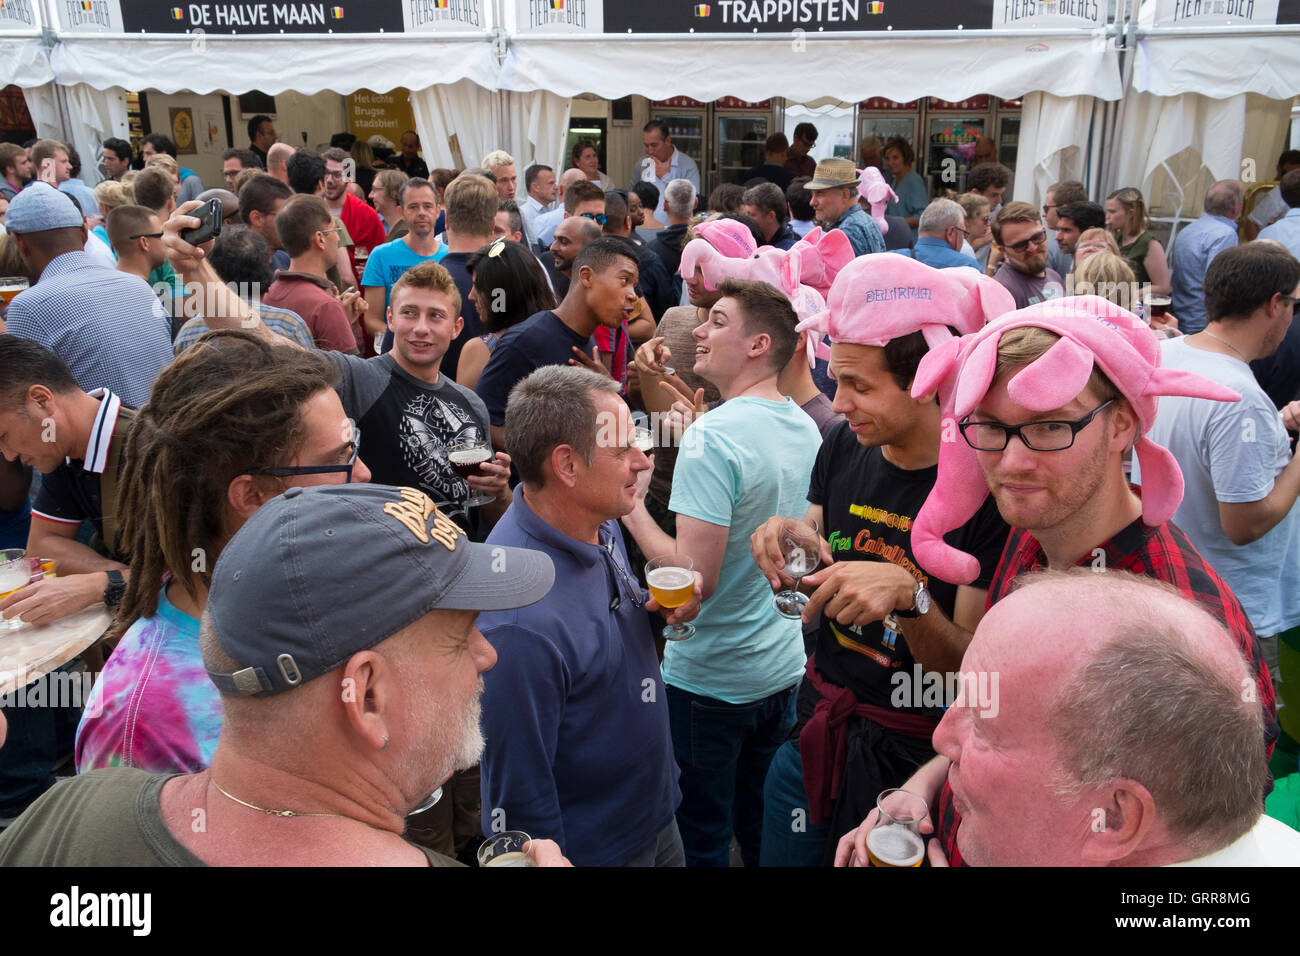 crowd people enjoy beer festival brussels belgium Stock Photo